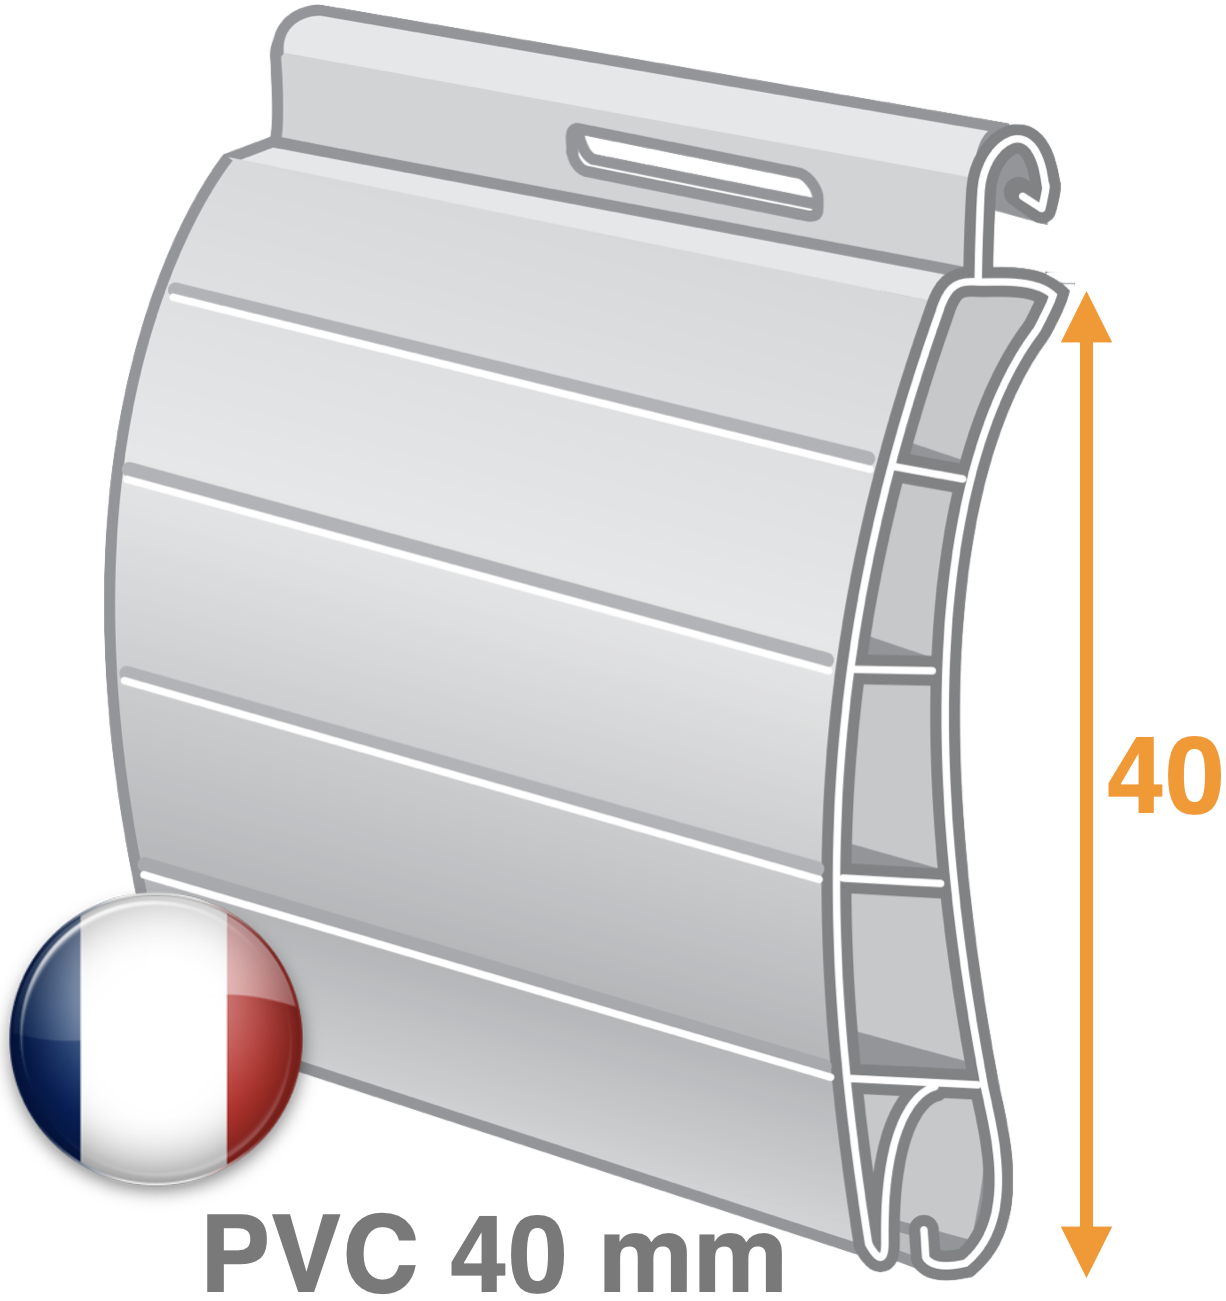 PVC 40 mm